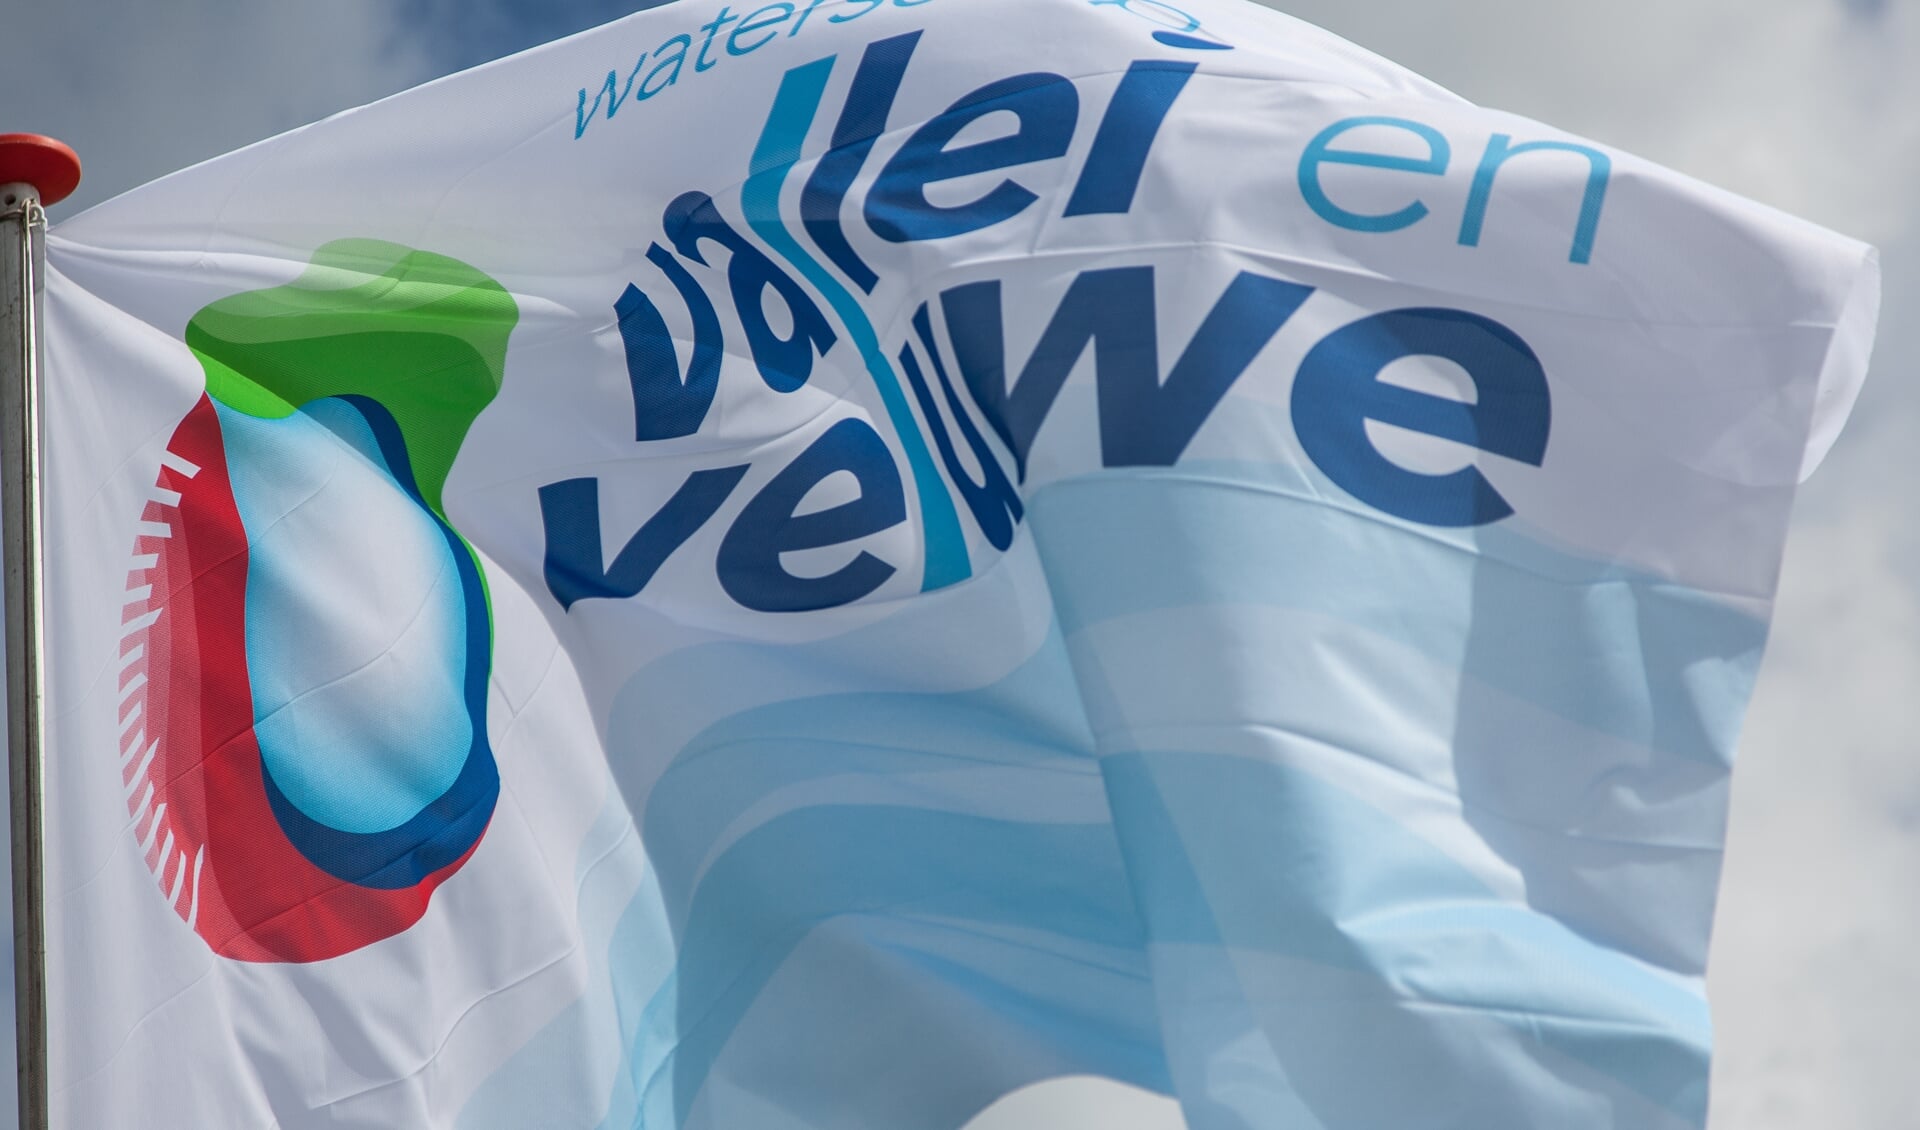 Vlag met logo van Waterschap Vallei en Veluwe.